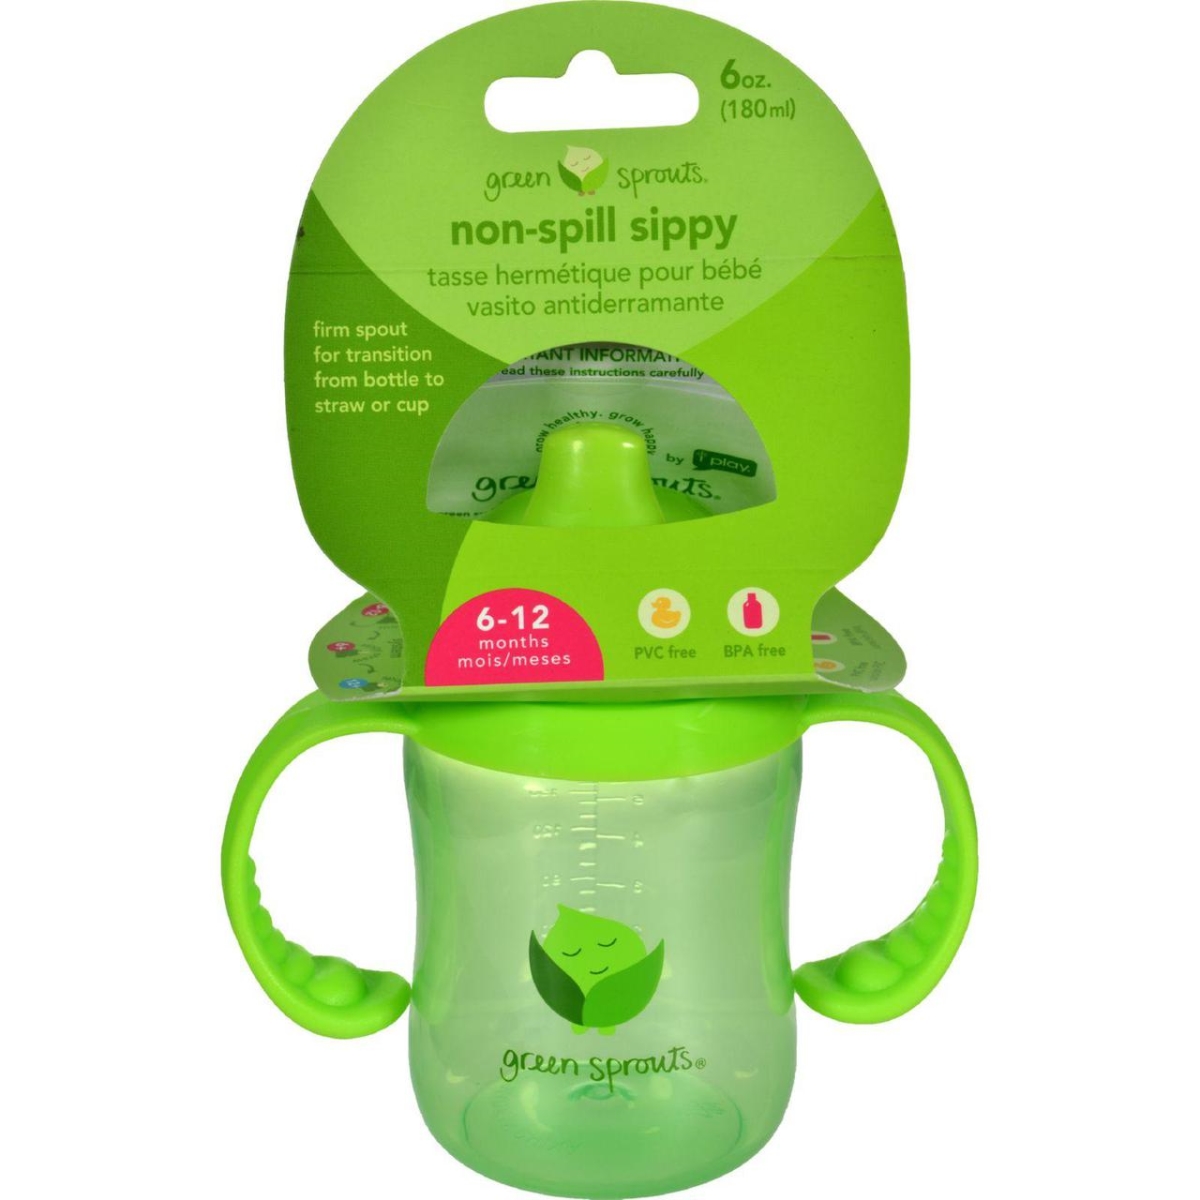 Hg1528926 6 Oz Non Spill Sippy Cup - Green